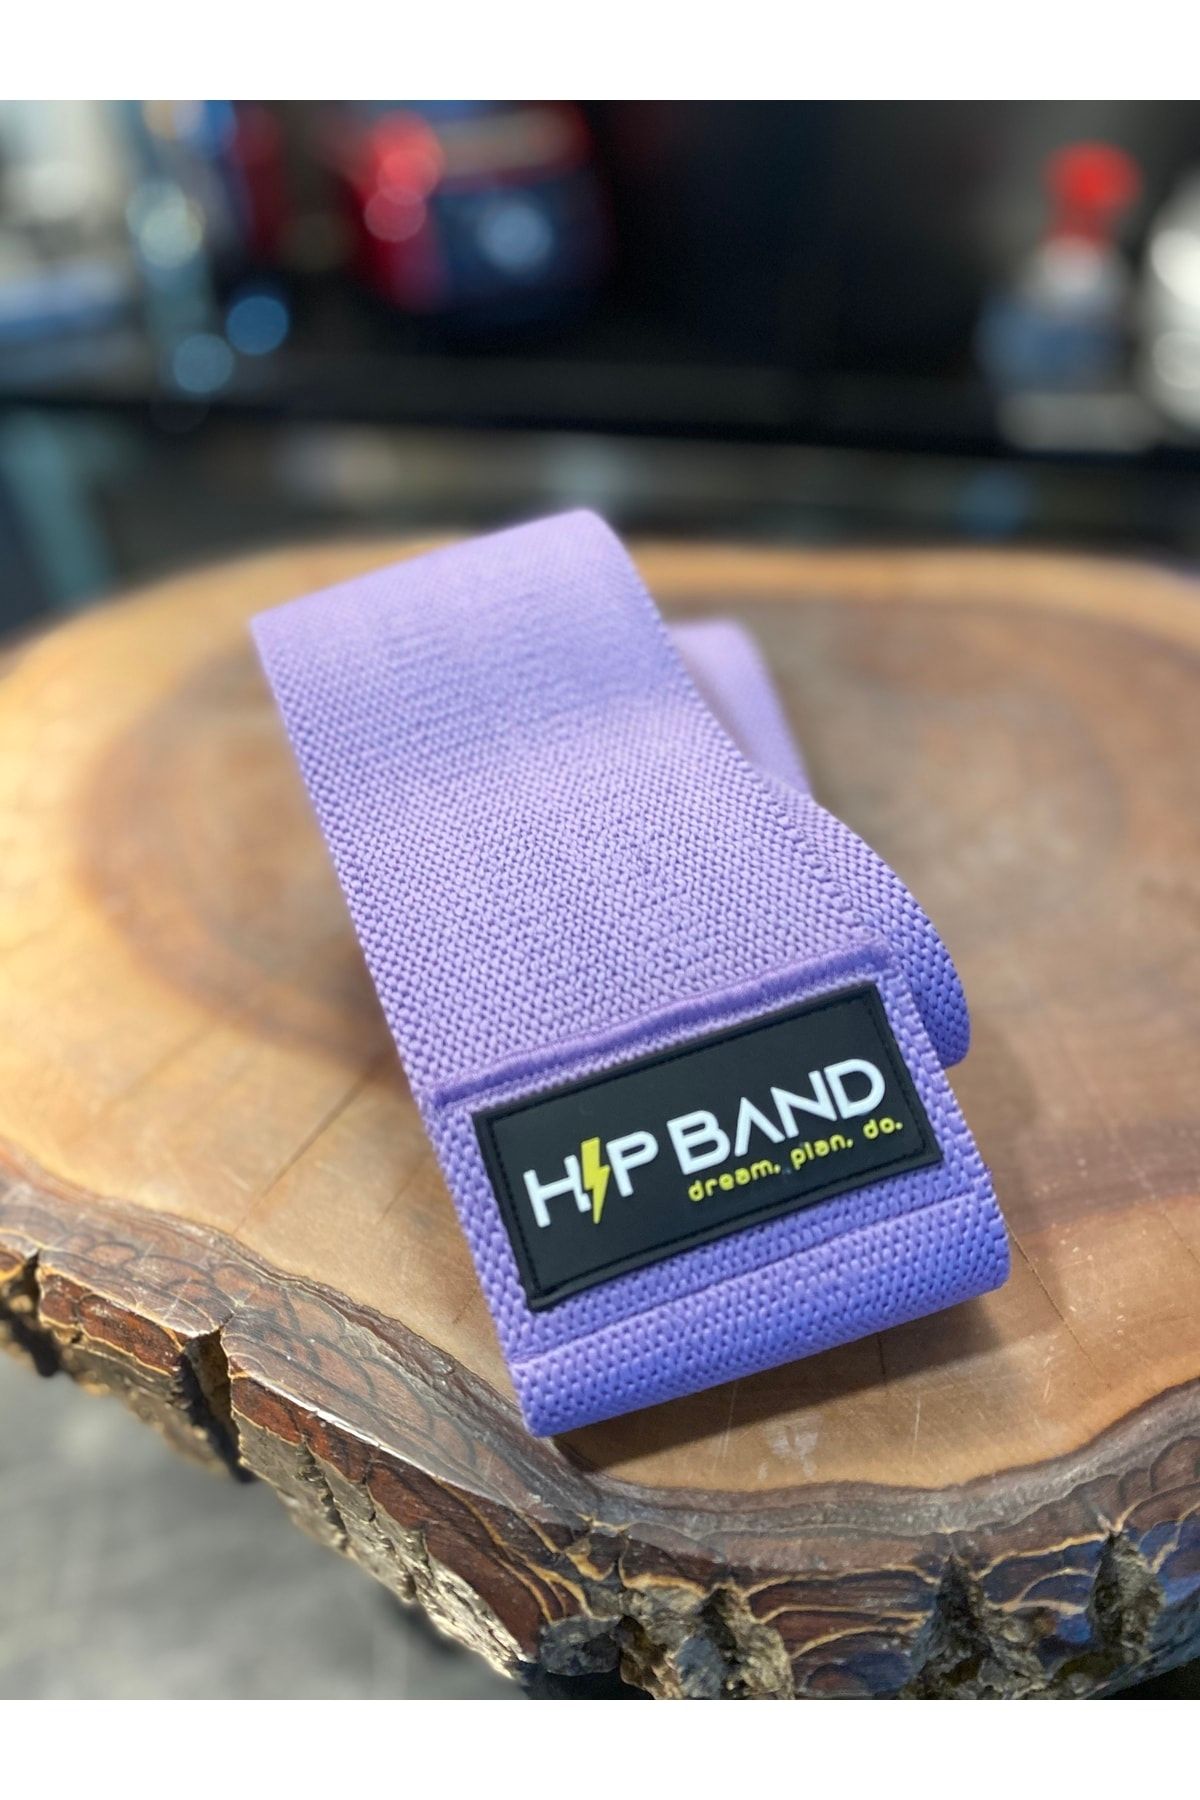 HİP BAND Loop Band Direnç Lastiği Egzersiz Bandı Hipband Squat Pilates Yoga Kalça